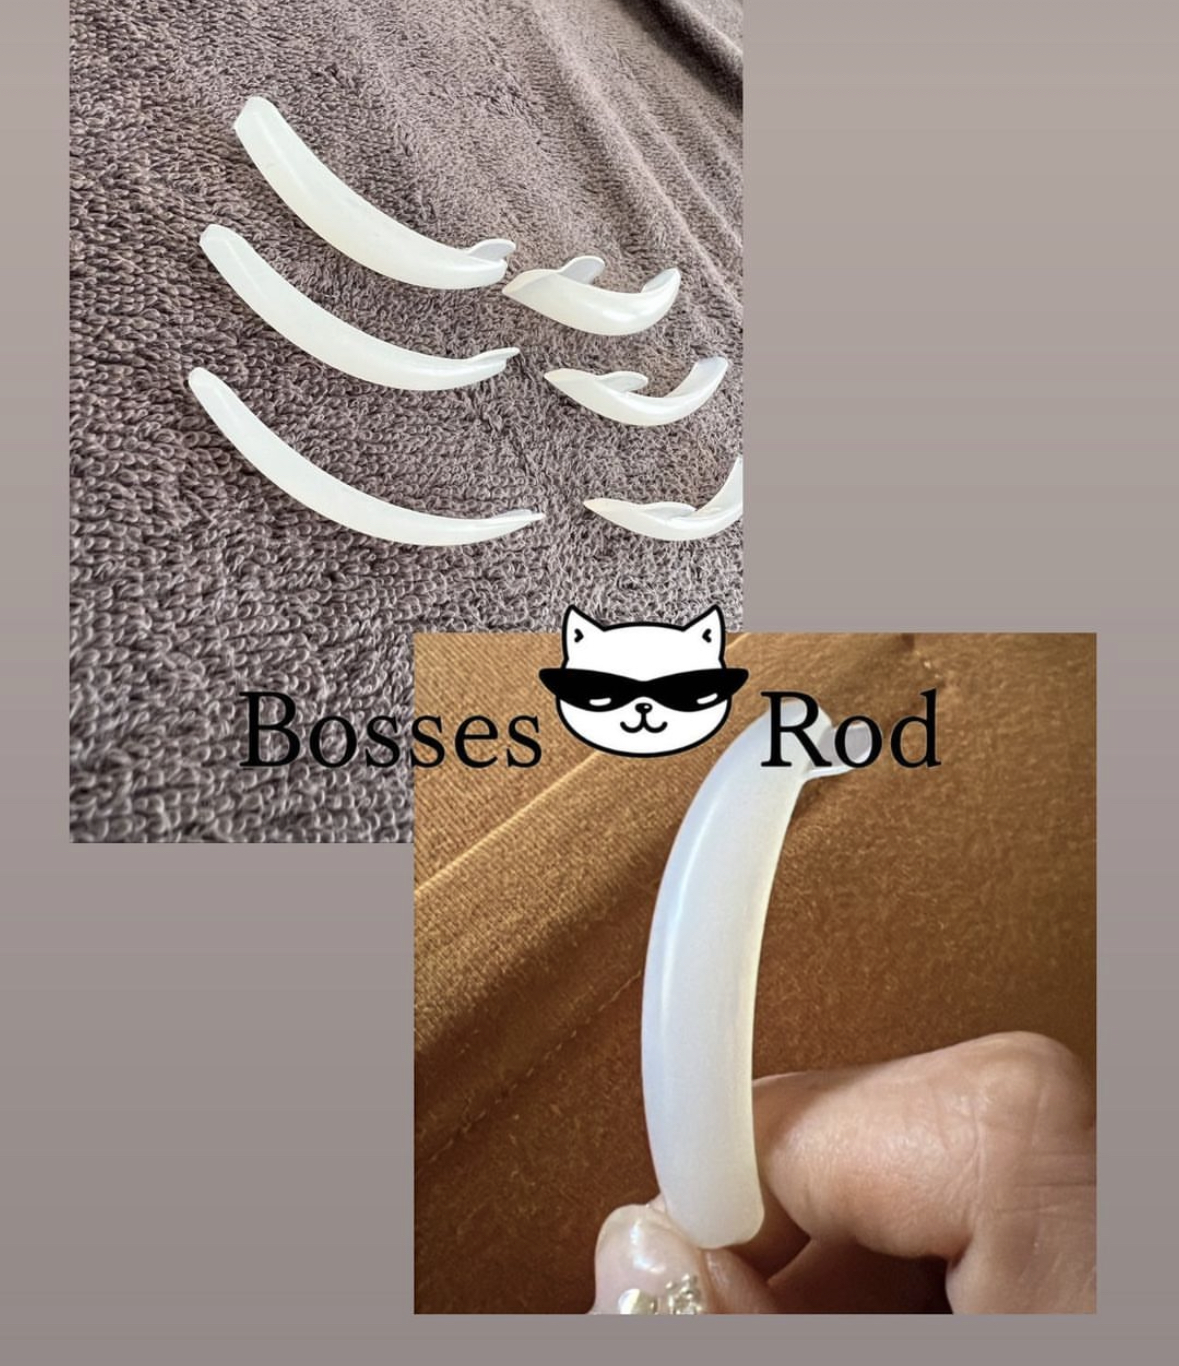 Bosses Rod/モチモチBosses Rod